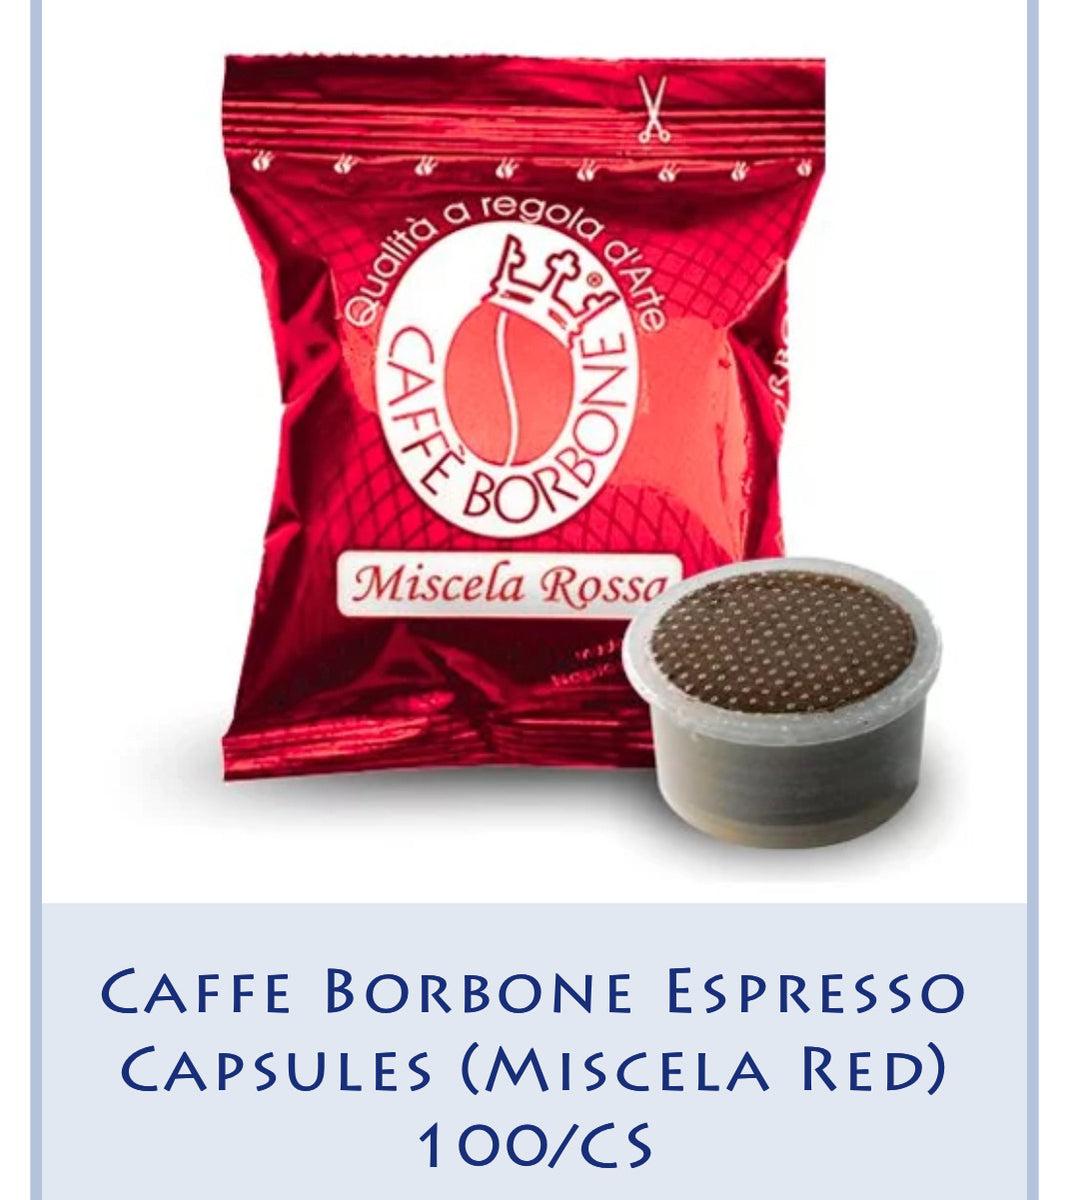 Caffe Borbone Espresso Capsules (Miscela Red) 100/CS